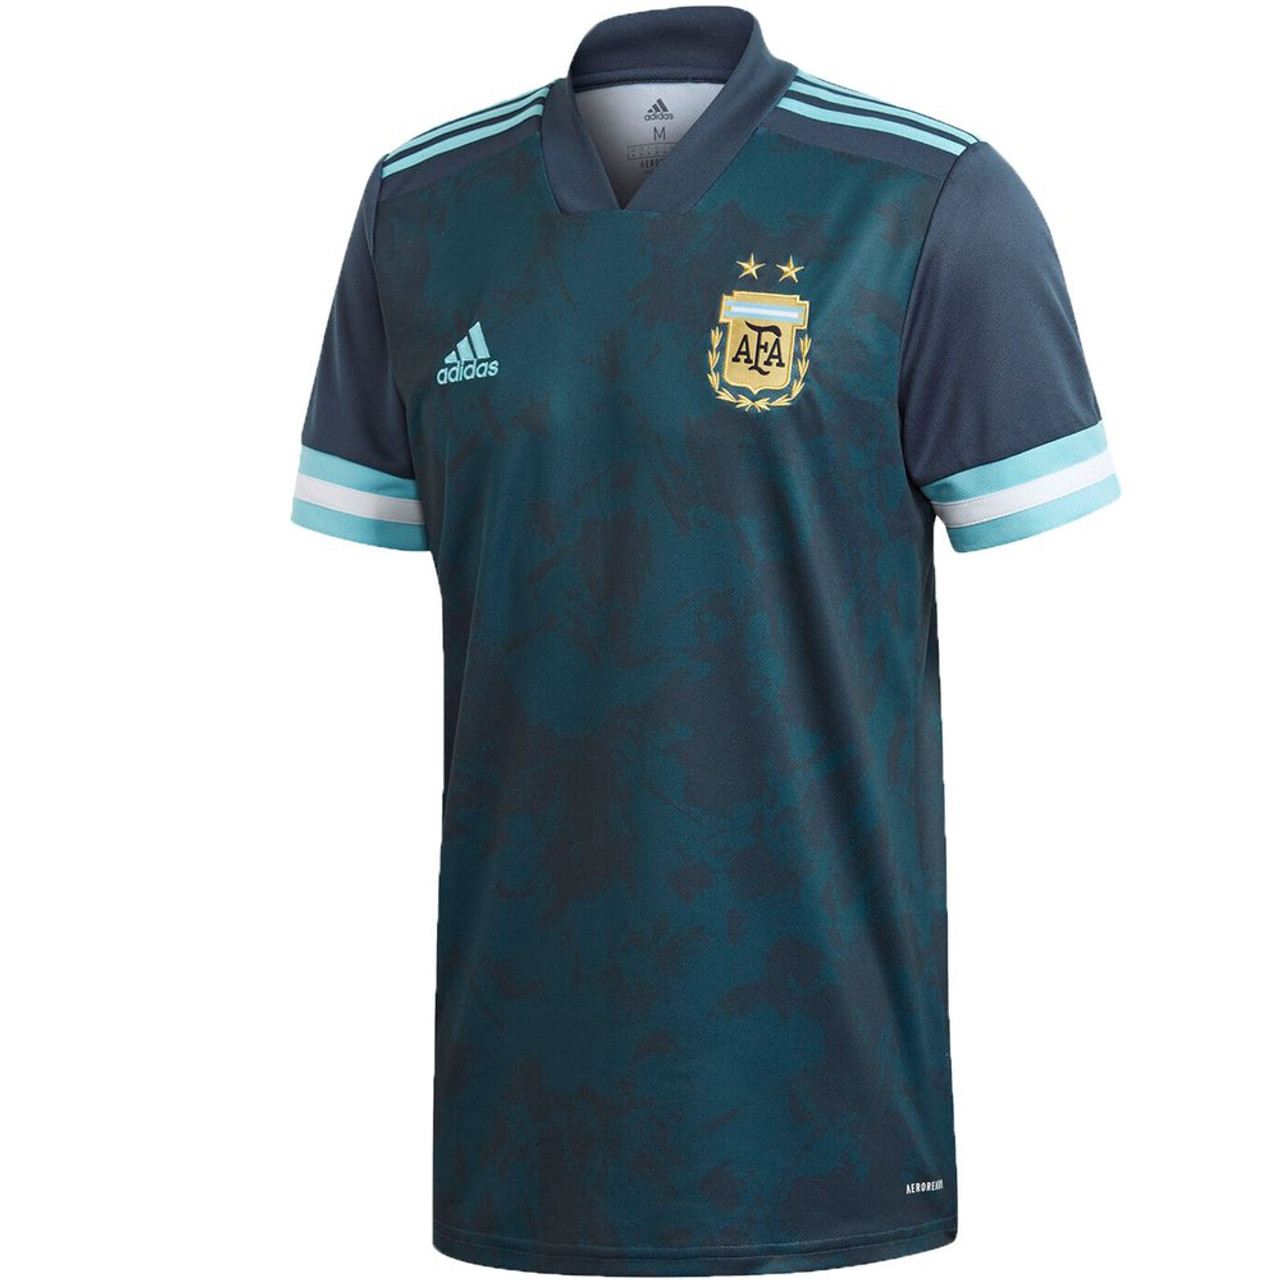 Argentina Jersey 2021 / 2020-2021 Adult Top players Shirt Argentina